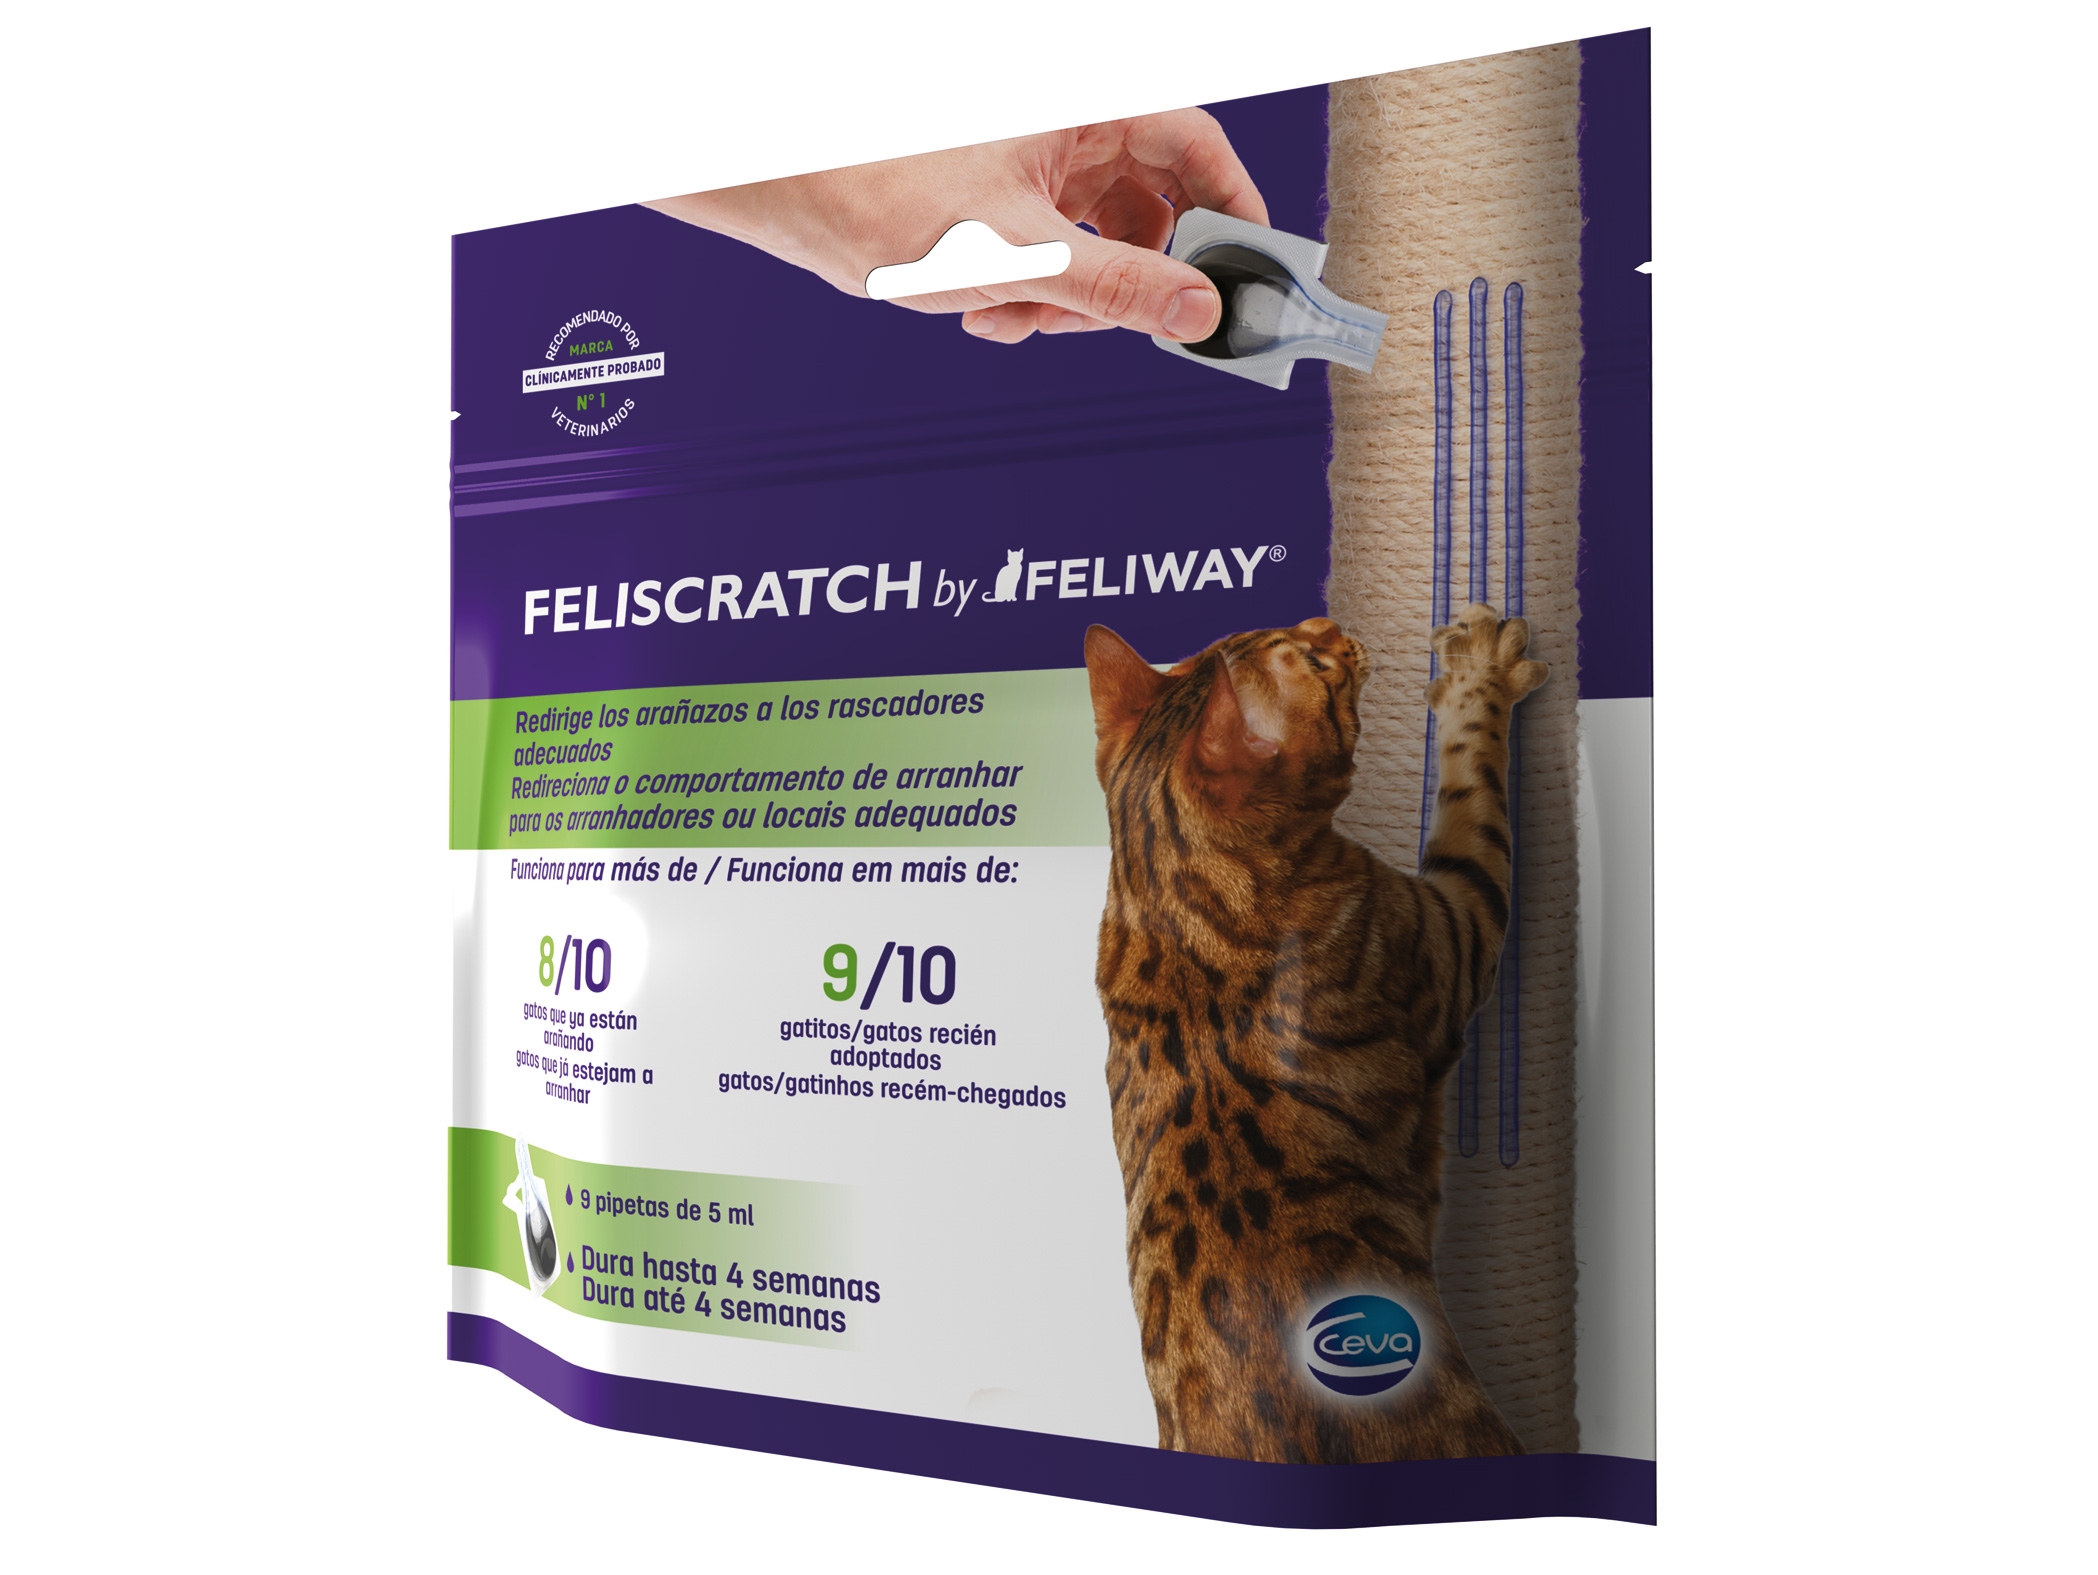 Felistratch by Feliway®